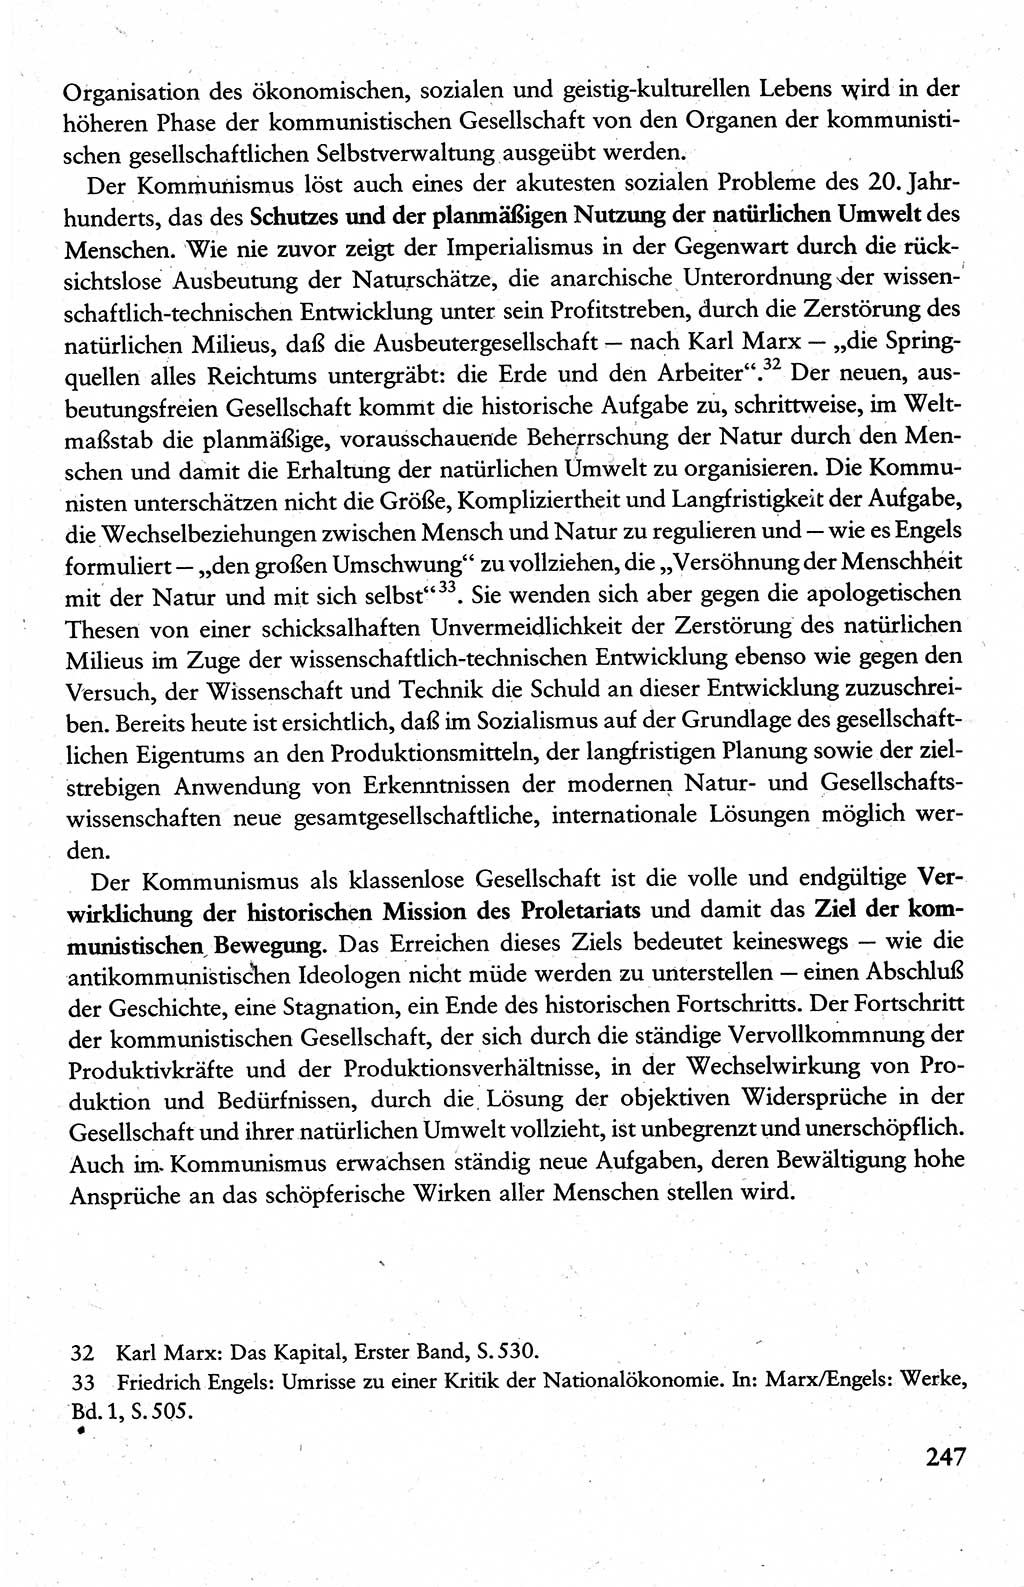 Wissenschaftlicher Kommunismus [Deutsche Demokratische Republik (DDR)], Lehrbuch für das marxistisch-leninistische Grundlagenstudium 1983, Seite 247 (Wiss. Komm. DDR Lb. 1983, S. 247)